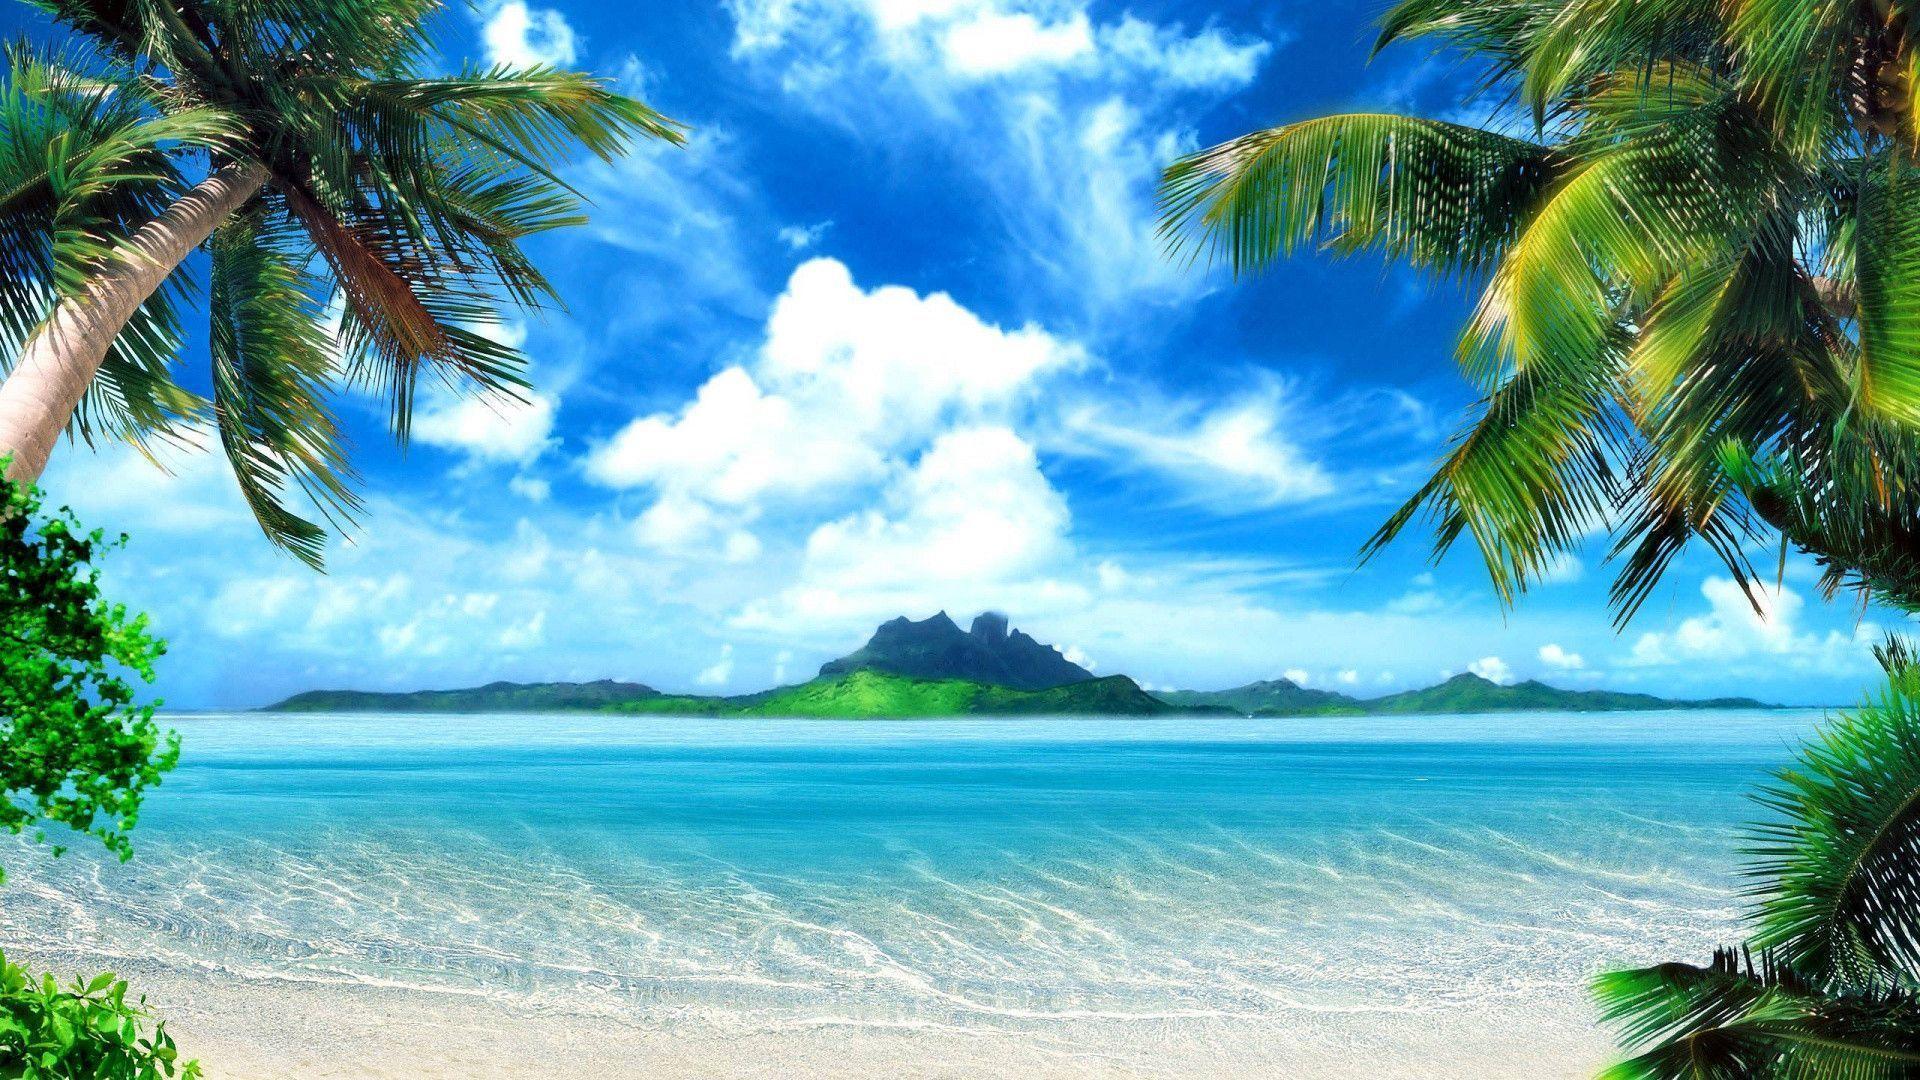 Tropik Adalar ile ilgili bilmek istediğiniz her şey